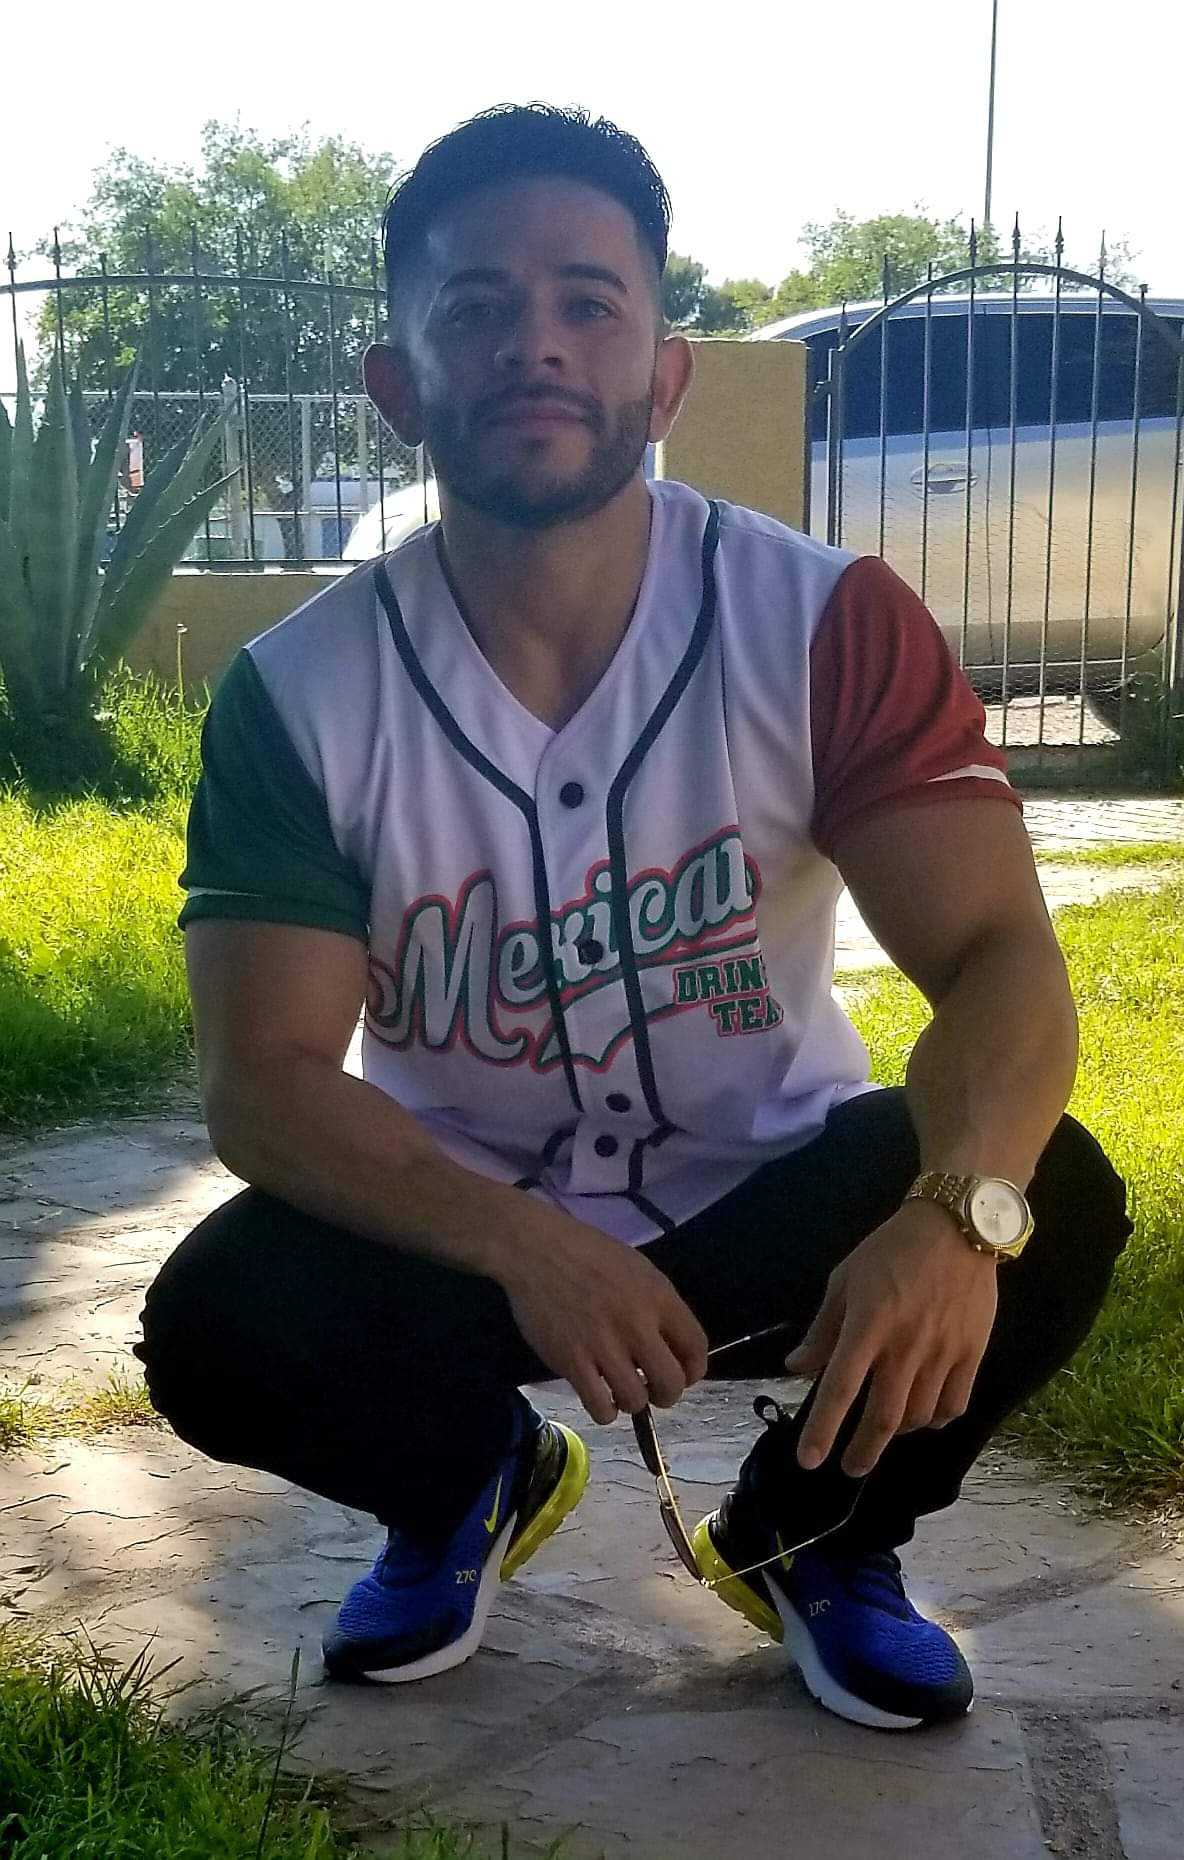  Custom Mexico Jerseys for Men, Mexico Jersey Baseball